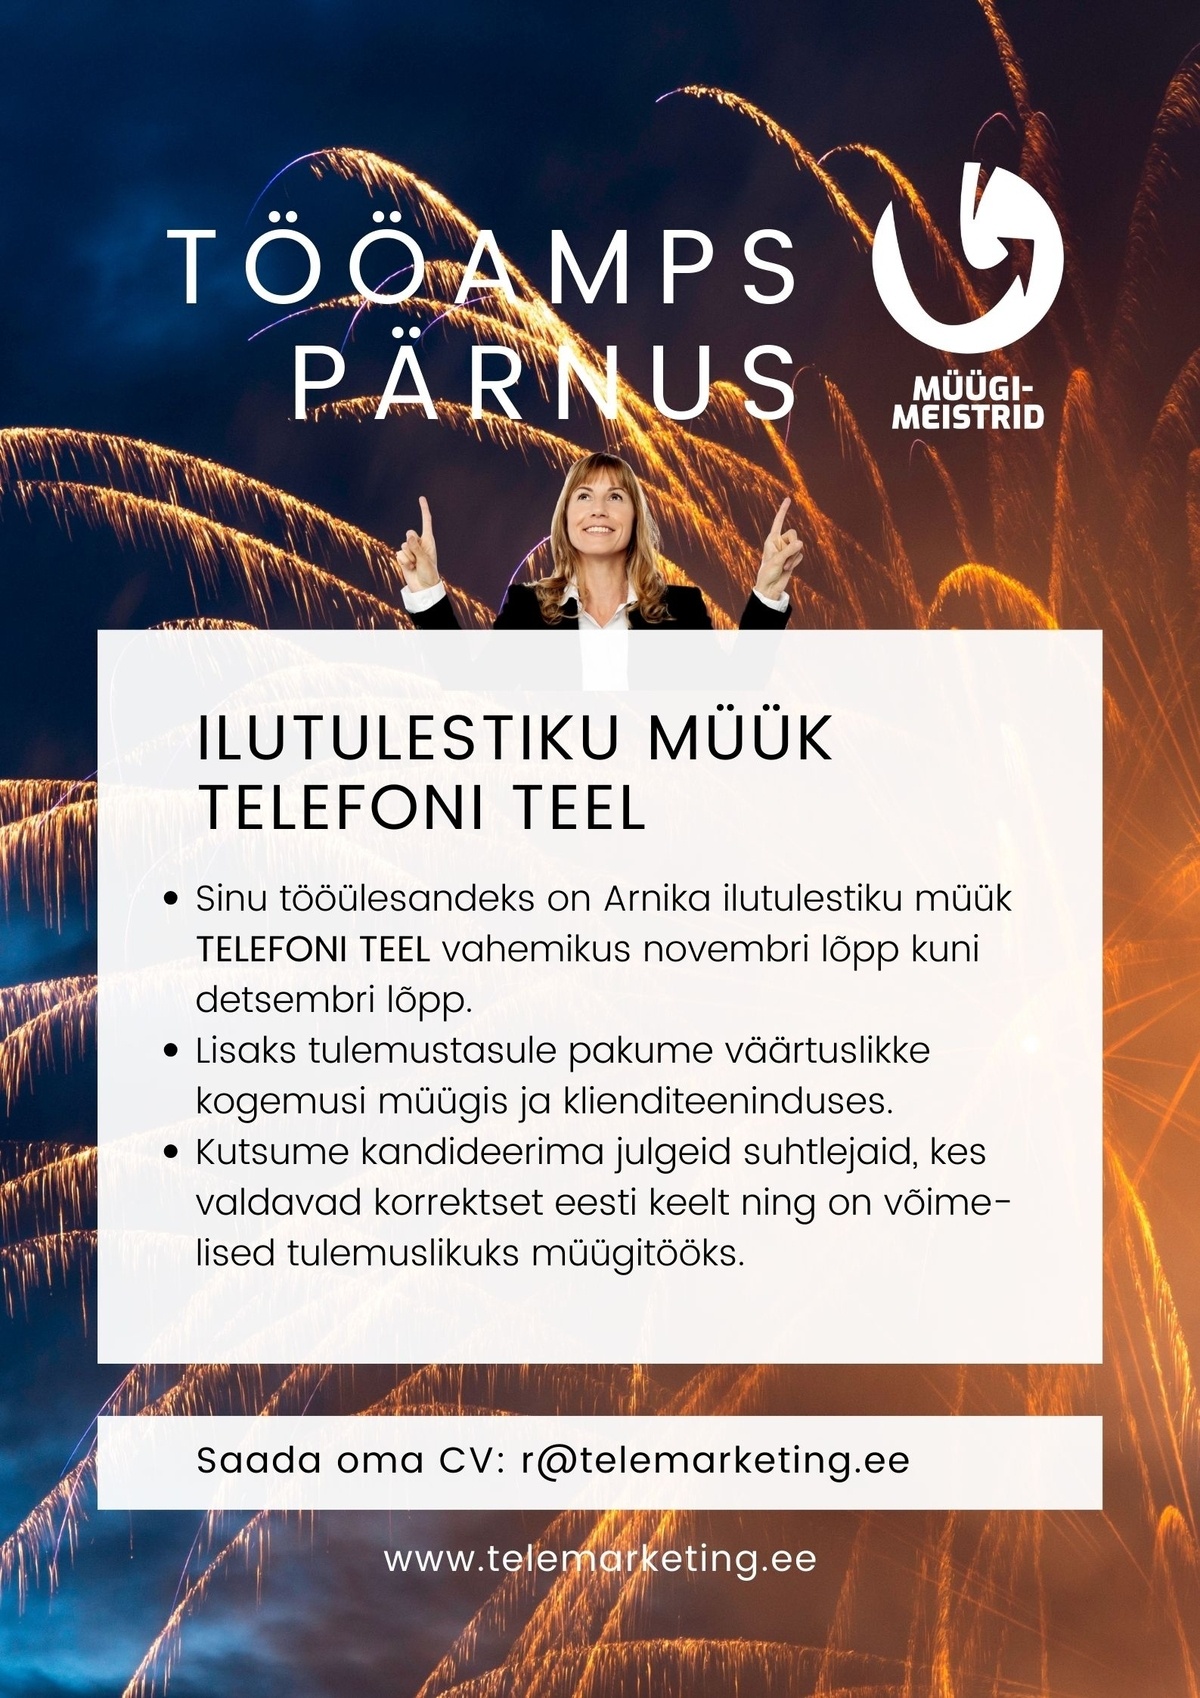 Müügimeistrite AS Ilutulestiku müük telefoni teel (Pärnu)